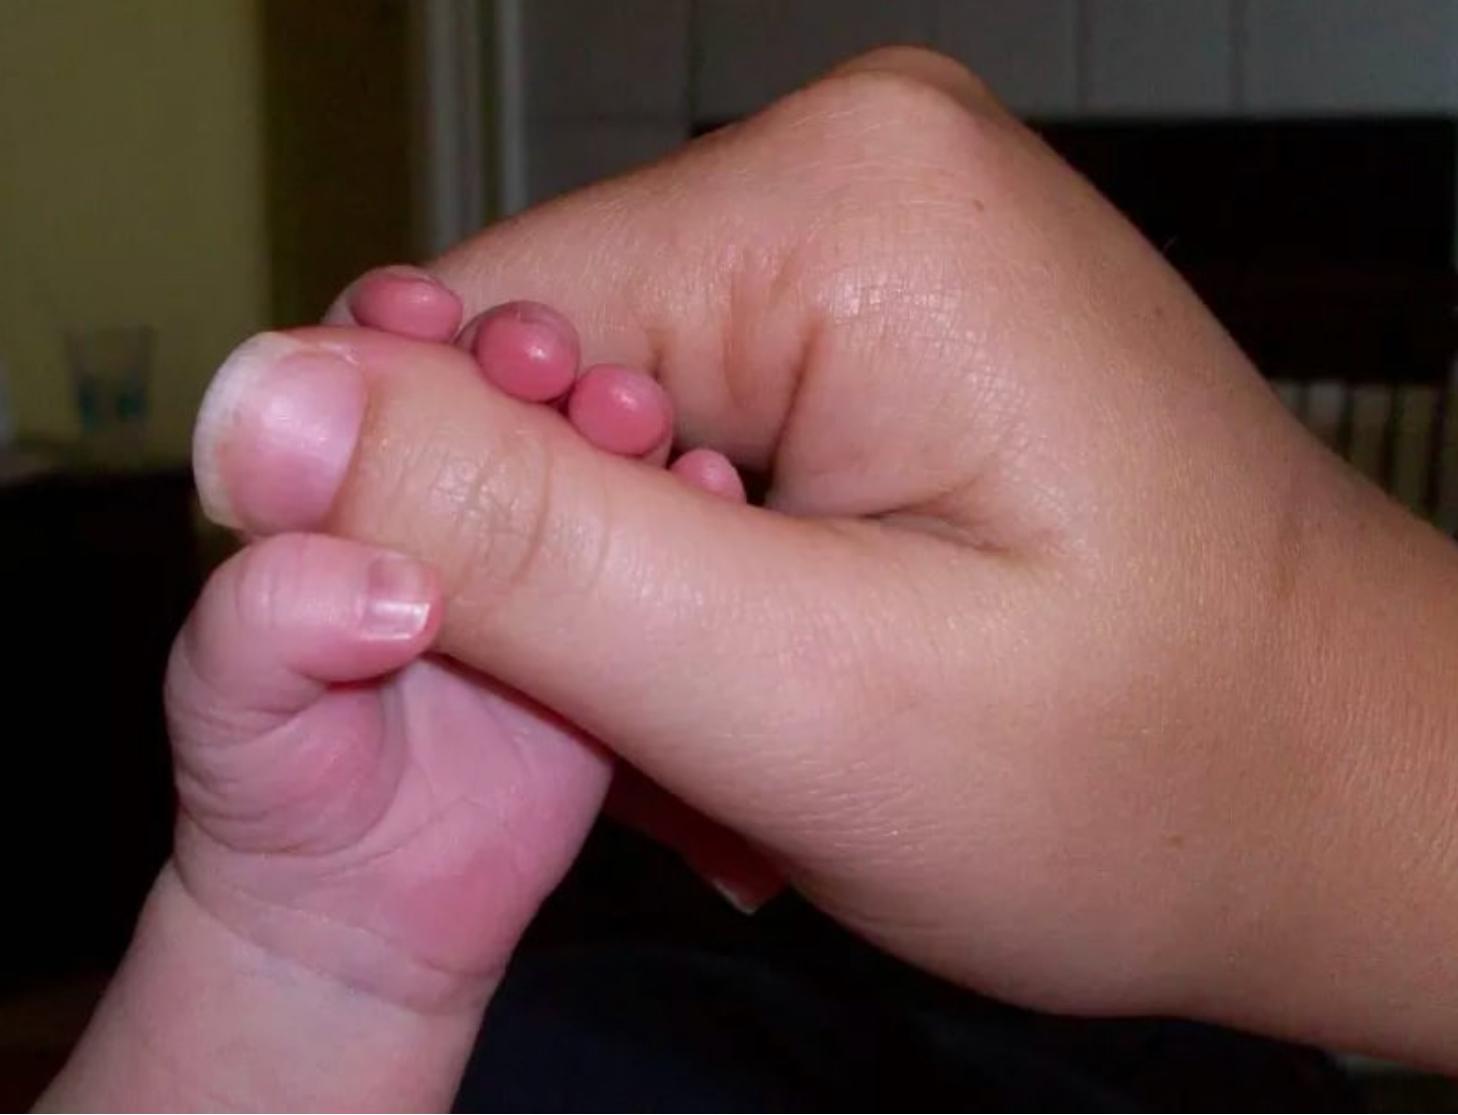 Палец толстый и большой. Большие пальцы на руках широкие. Маленький ноготь на большом пальце. Широкий ноготь на большом пальце.